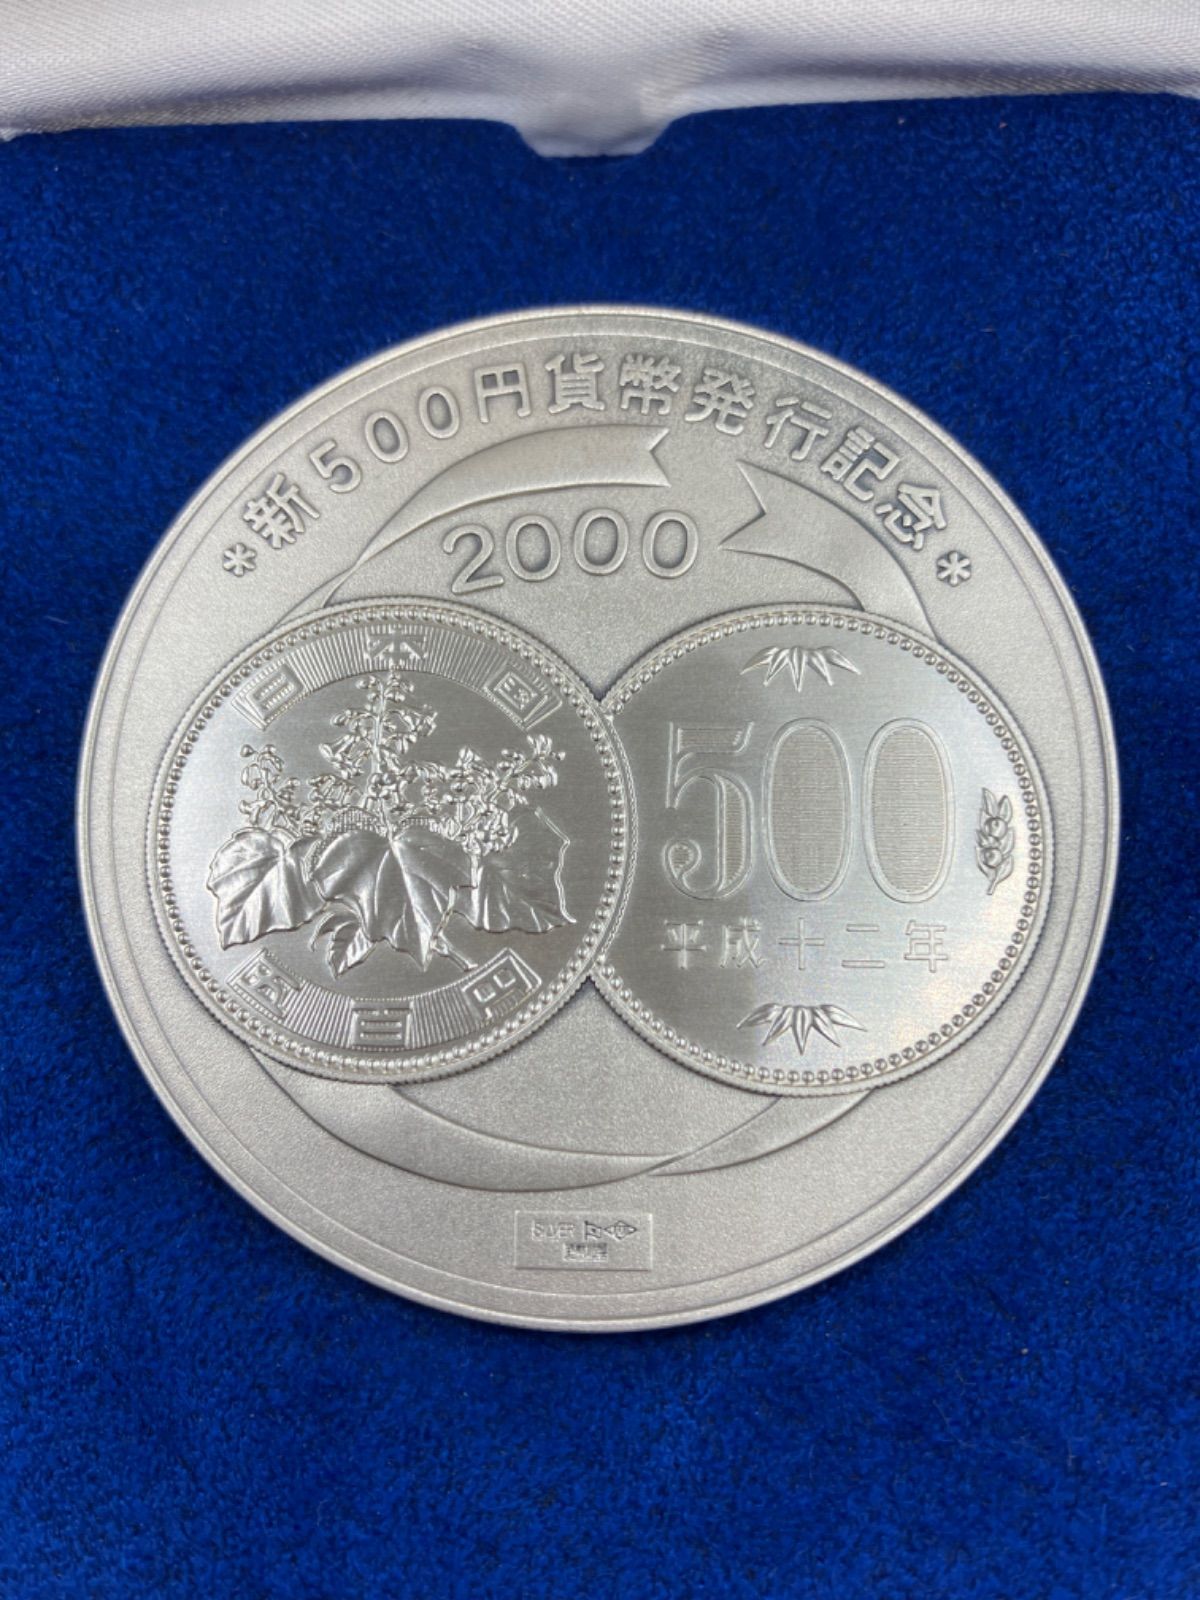 新500円硬貨発行記念 純銀製メダル 造幣局 2000年 - ミスターコインズ